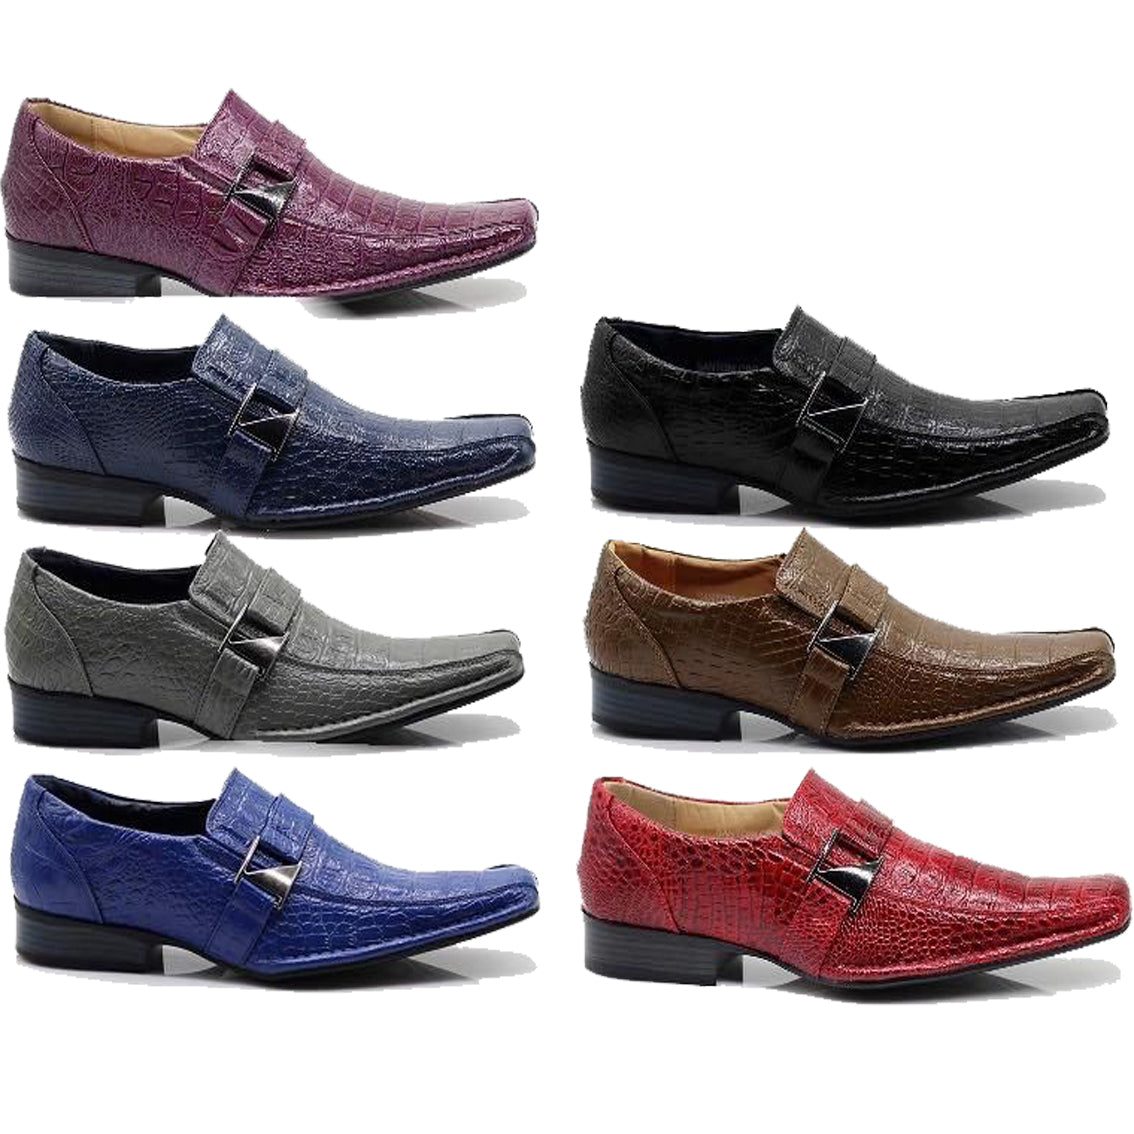 Wholesale Men's Shoes For Men Dress Loafer Cadman NFSI